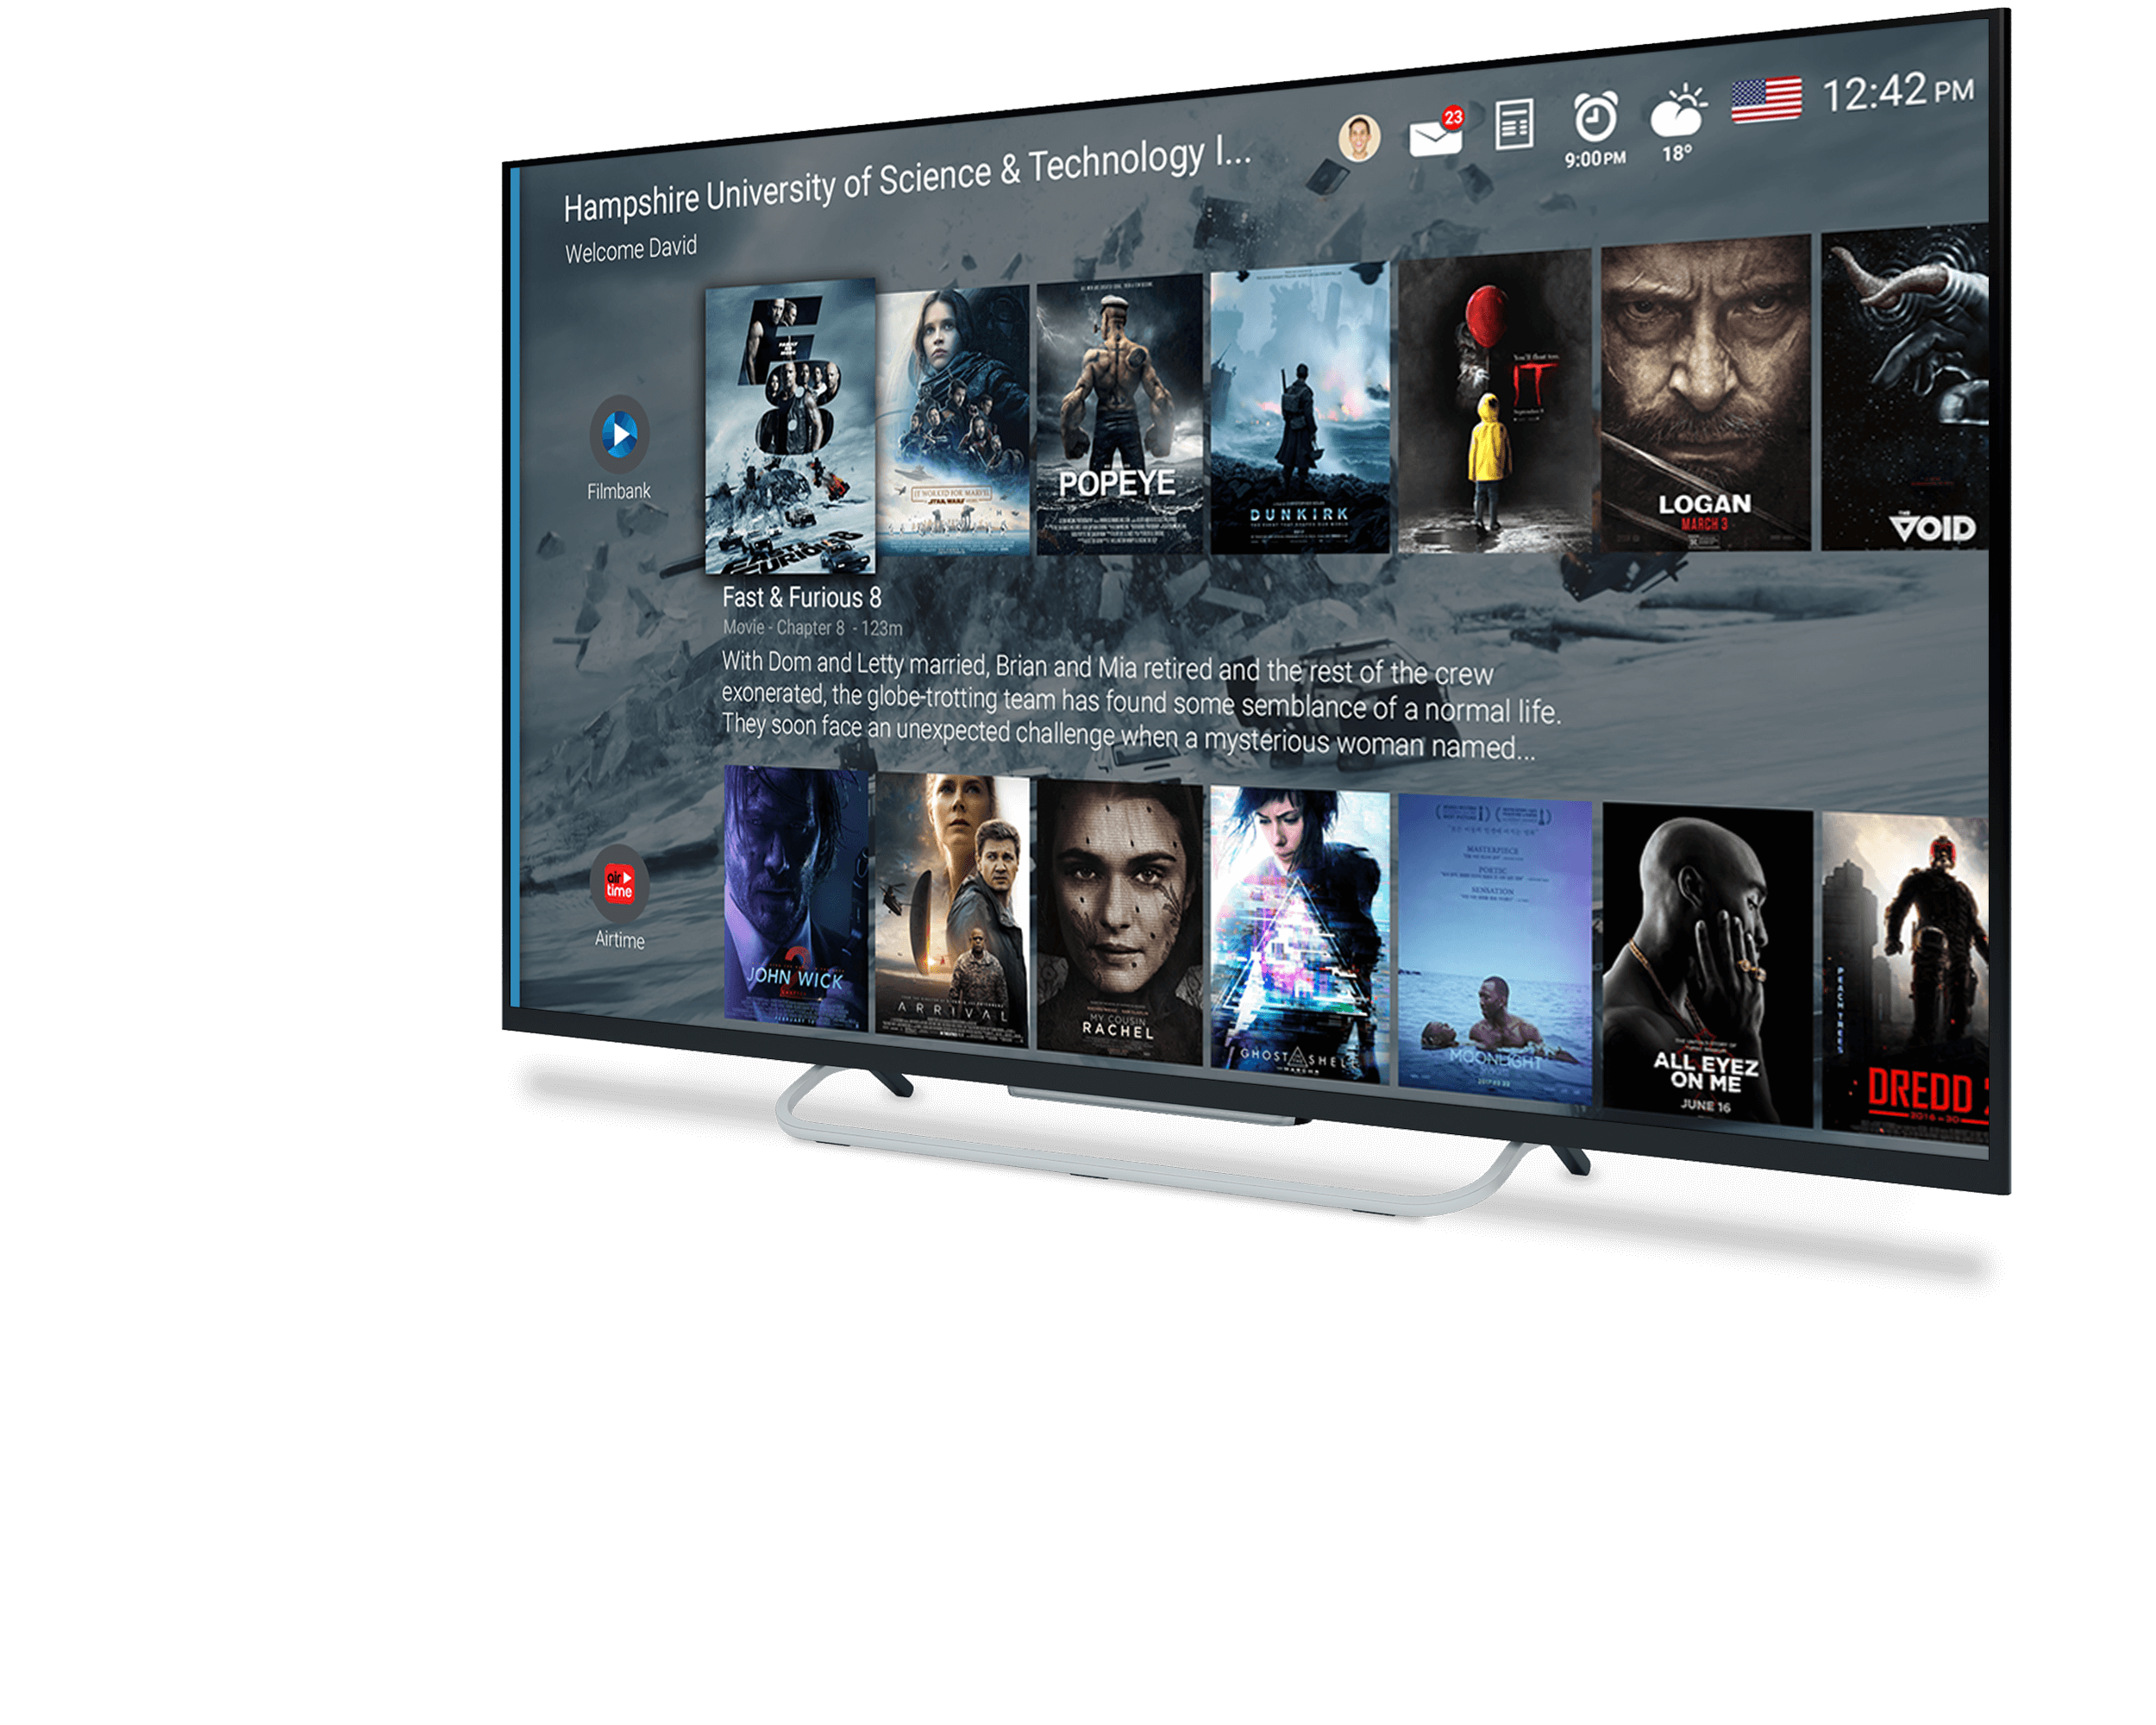 Philips Android TV launcher app description